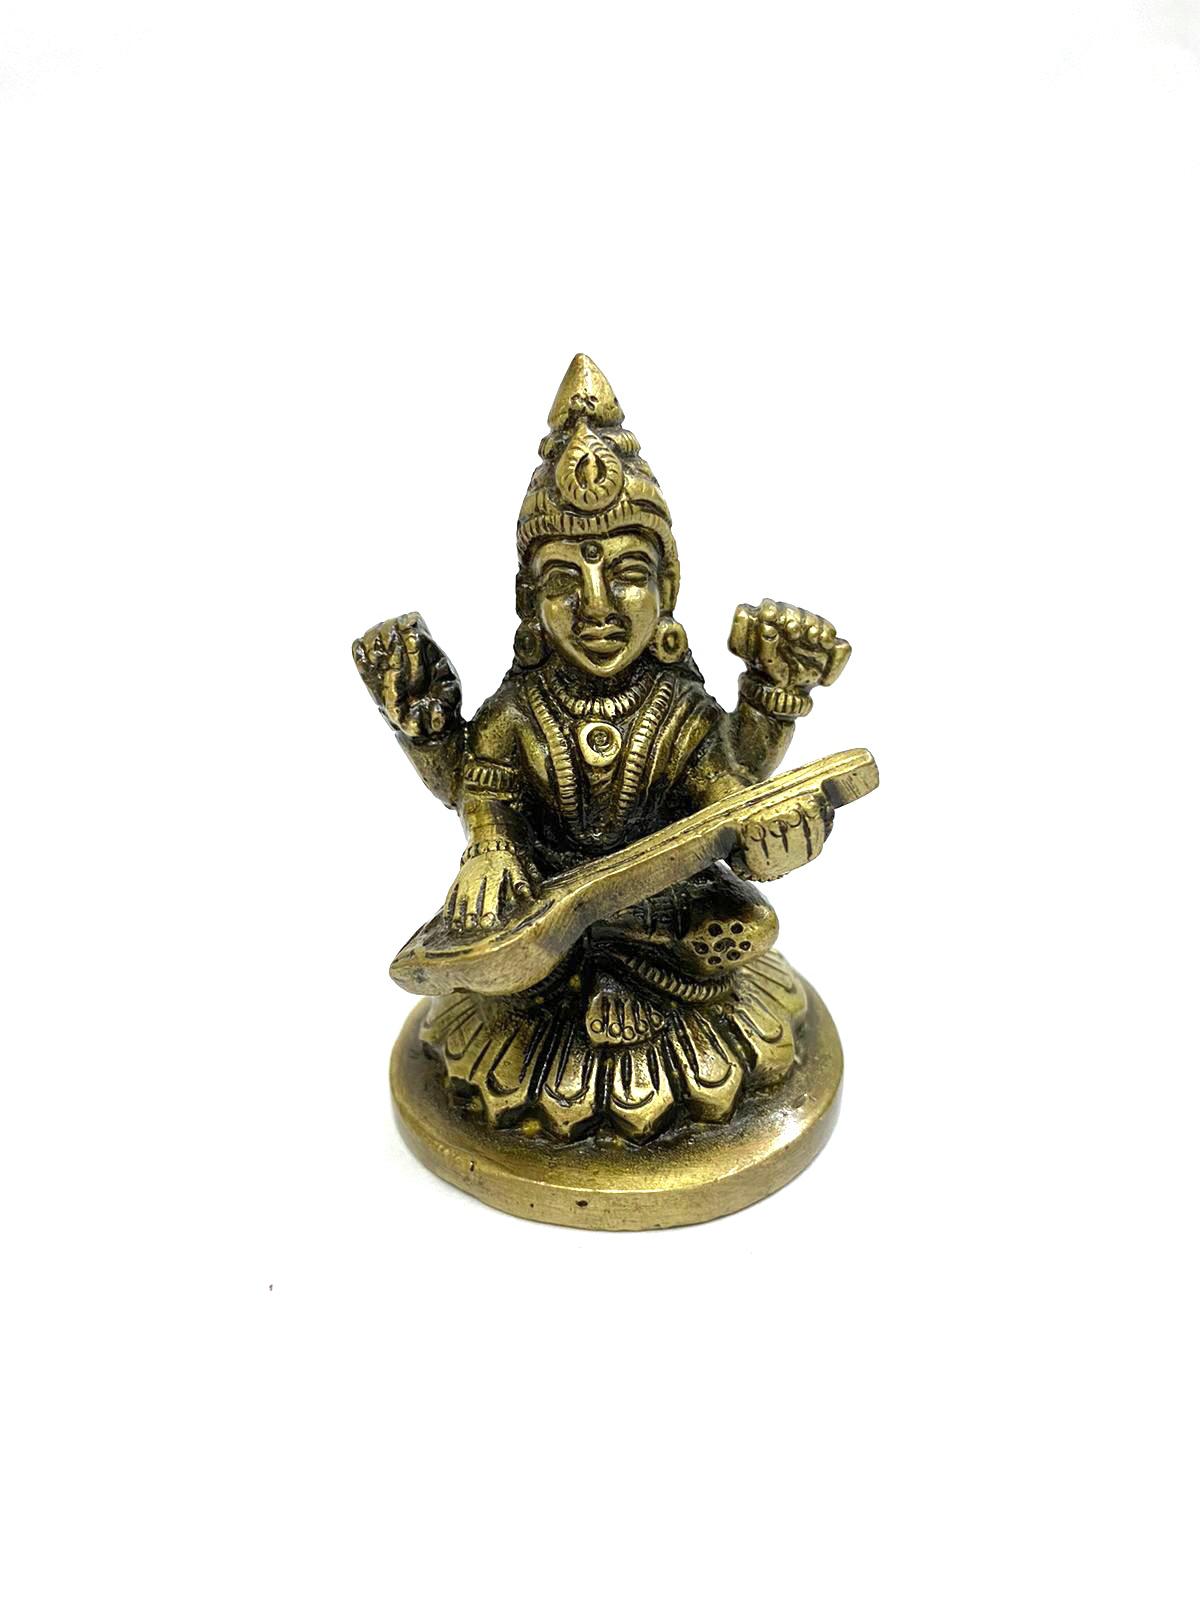 Gift Brass Idols Sarasvati Lakshmi Ganesh Hindu Gods Religious Tamrapatra